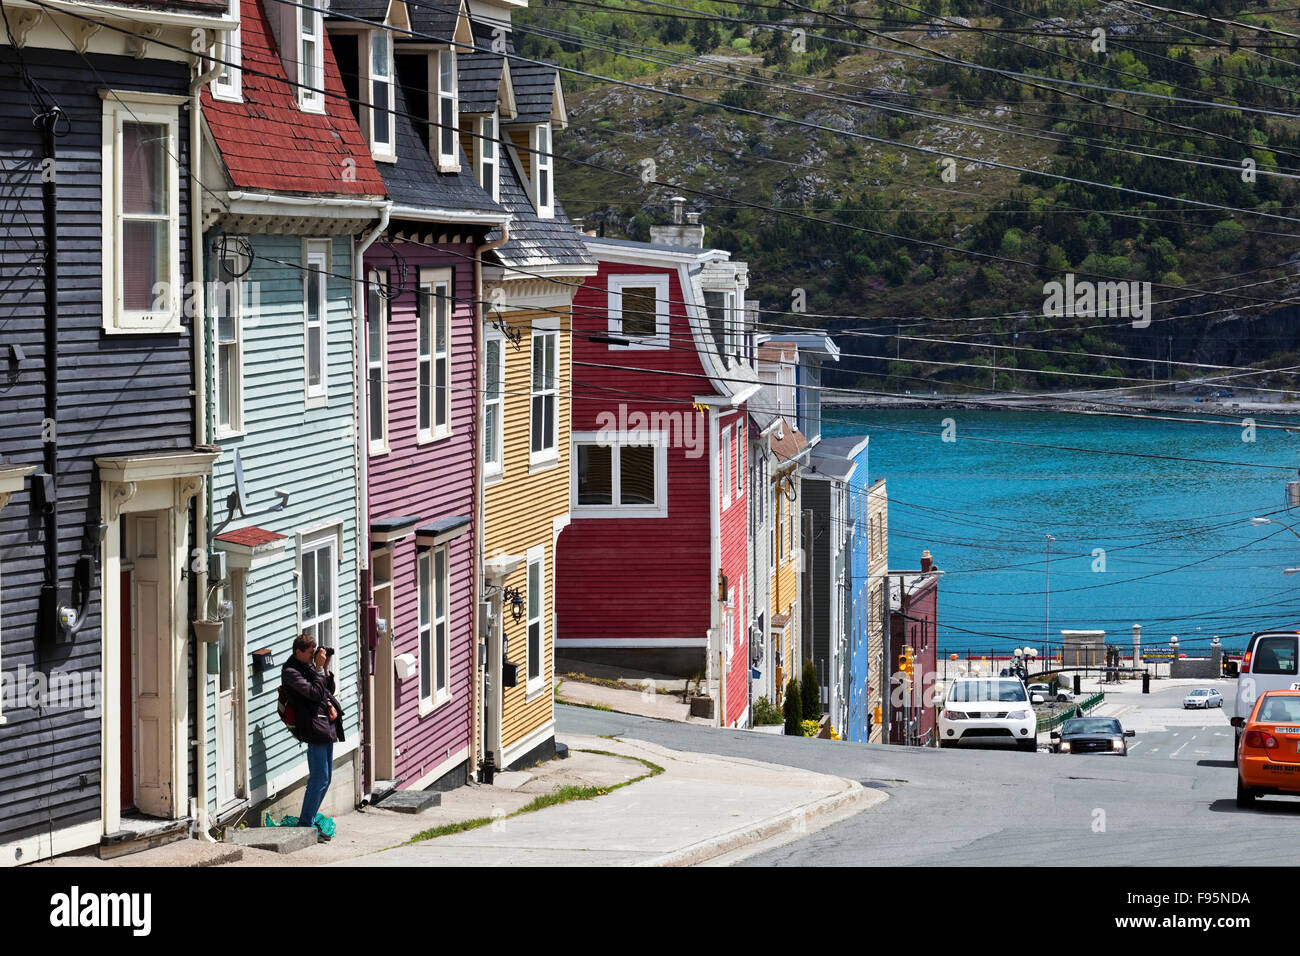 Mehrere Bereiche der Stadt von St. John's-Funktion Jellybean Reihen Häuser, so genannt wegen ihrer bonbonbunte Farben, das Ergebnis Stockfoto